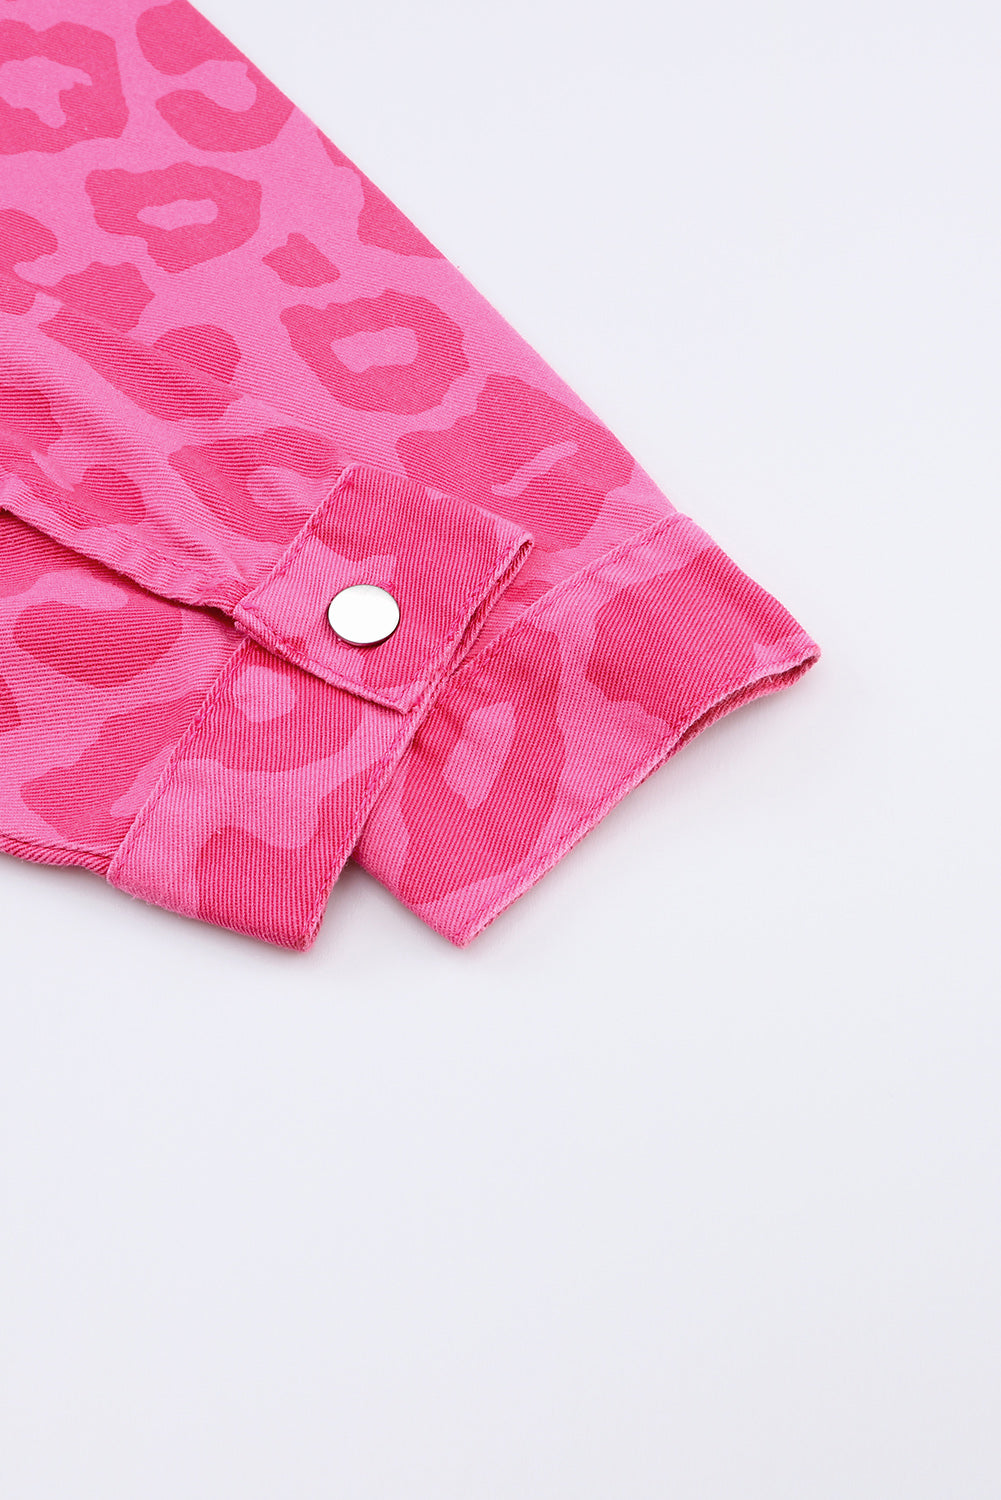 Pink Leopard Print Button Cuffs Raw Hem Jacket